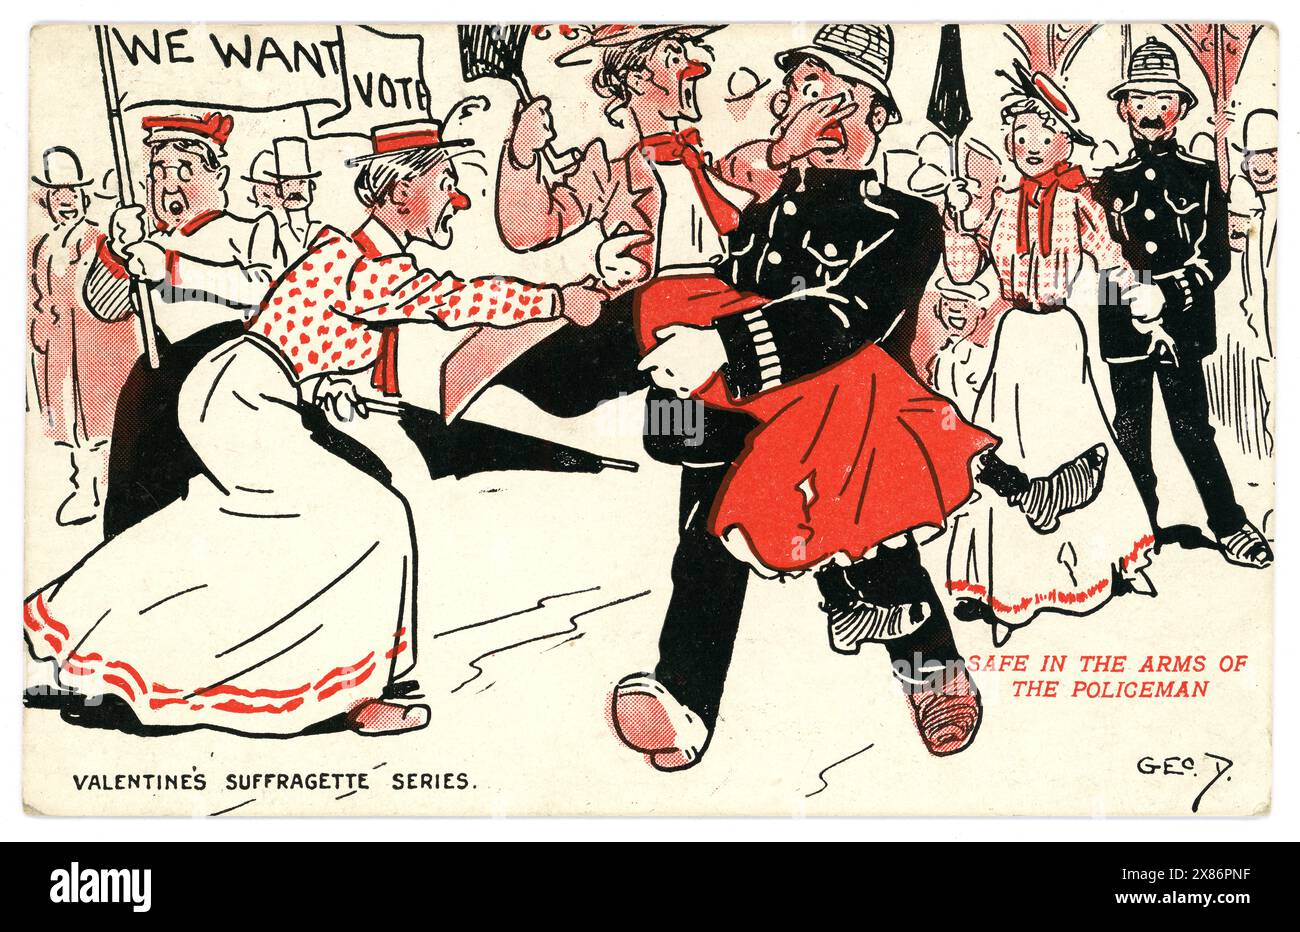 Original-Anti-Suffragette-Postkarte, eine Frau wird von einem Polizisten verhaftet. Die Bildunterschrift lautet "sicher in den Armen des Polizisten", das Banner ist "Wir wollen die Abstimmung". Die Stimmen für Frauen waren in den frühen 1900er Jahren ein umstrittenes Thema Das ist eine typische Postkarte der Zeit, die Suffragetten als hässliche, unattraktive, wütende Frauen darstellt. Von Geo D Valentines Suffragette Serie. Stockfoto